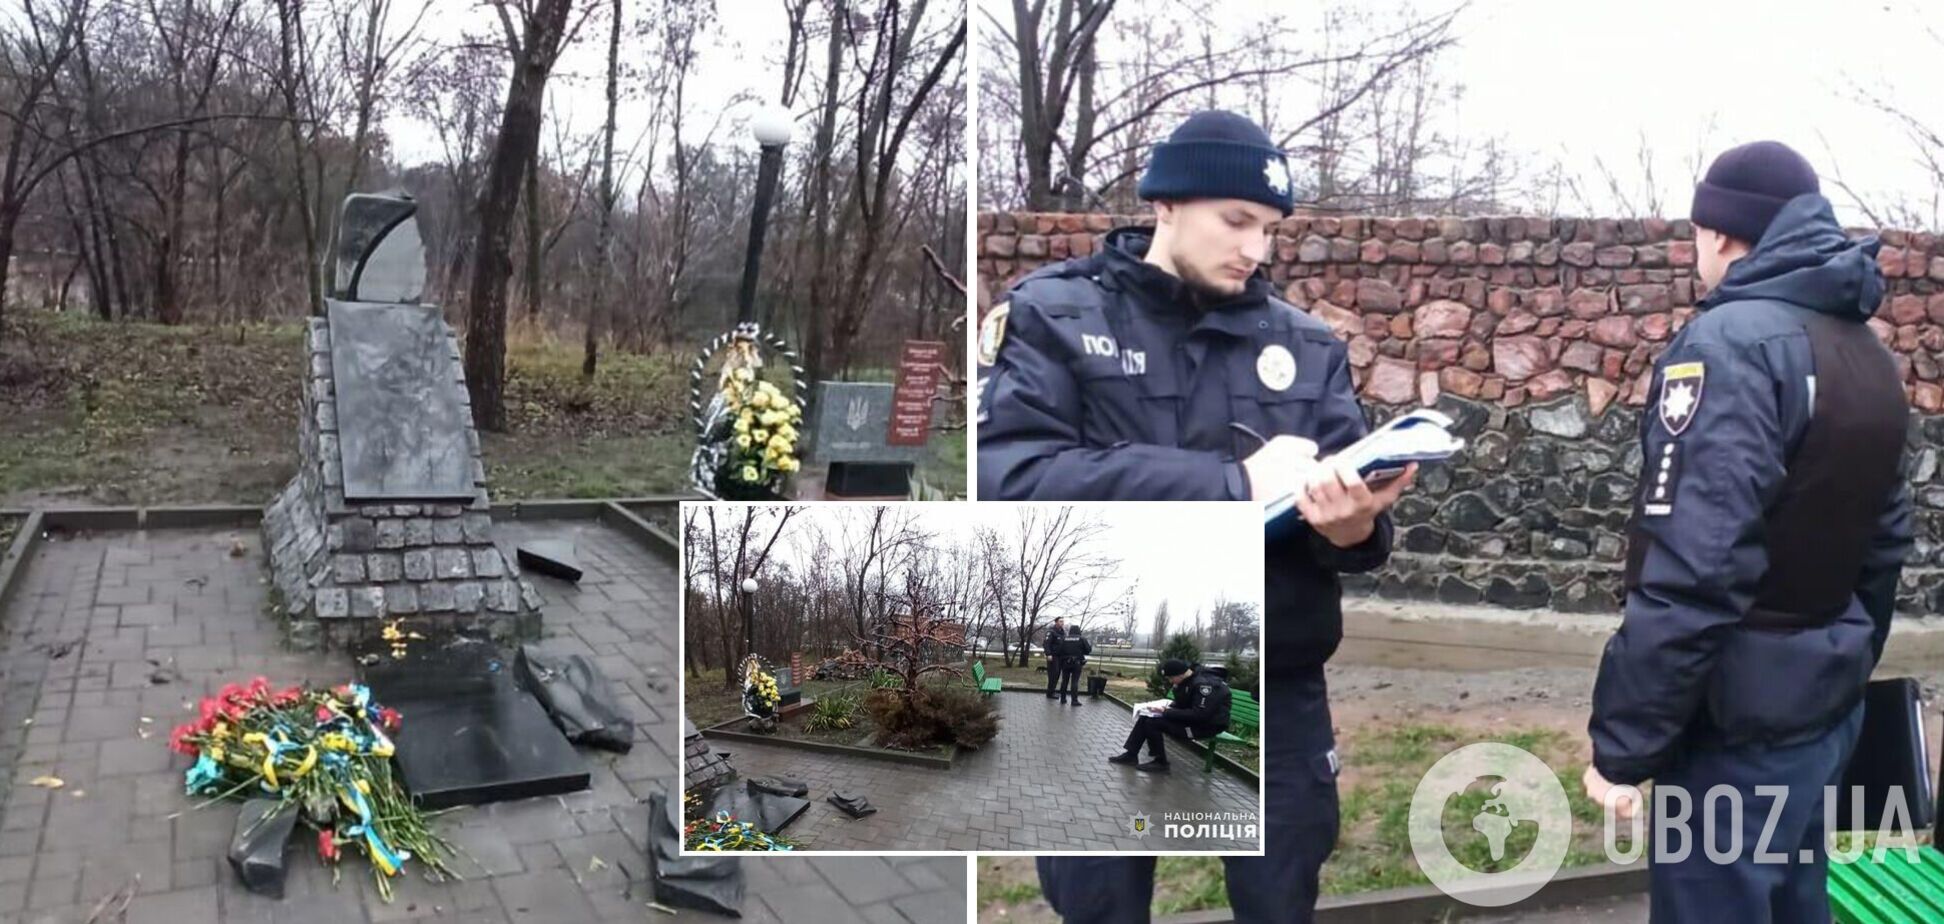 Правоохранители разыскивают причастных к повреждению памятника в Первомайске